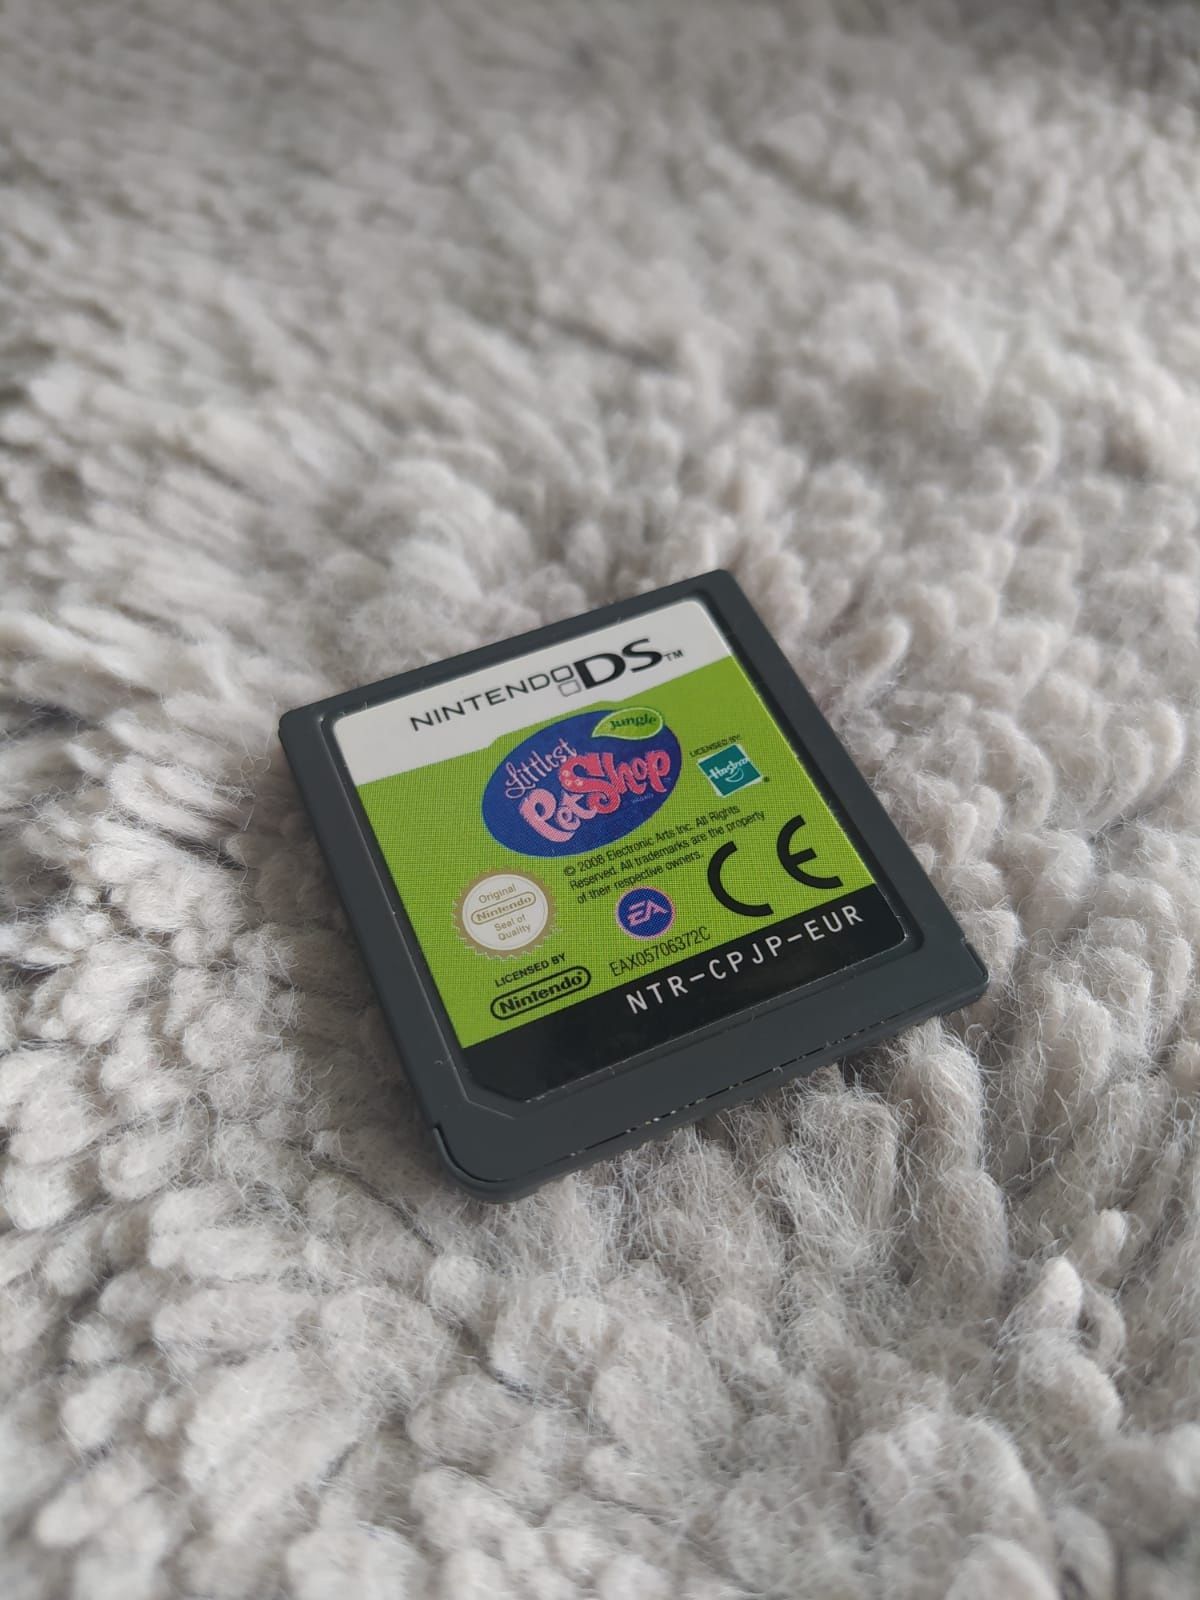 Nintendo DS Gra Littlest Pet Shop "Jungle"